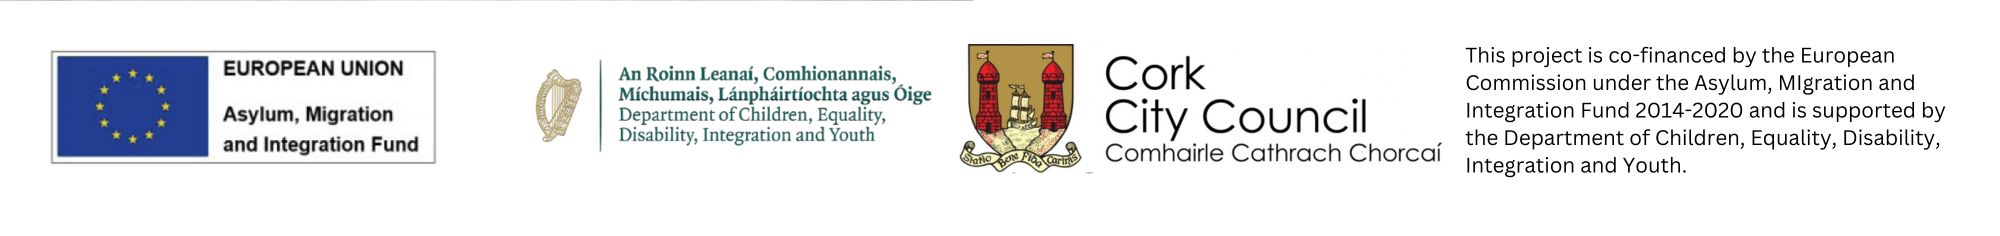 AMIF. DCEDIY, Cork City Council logos